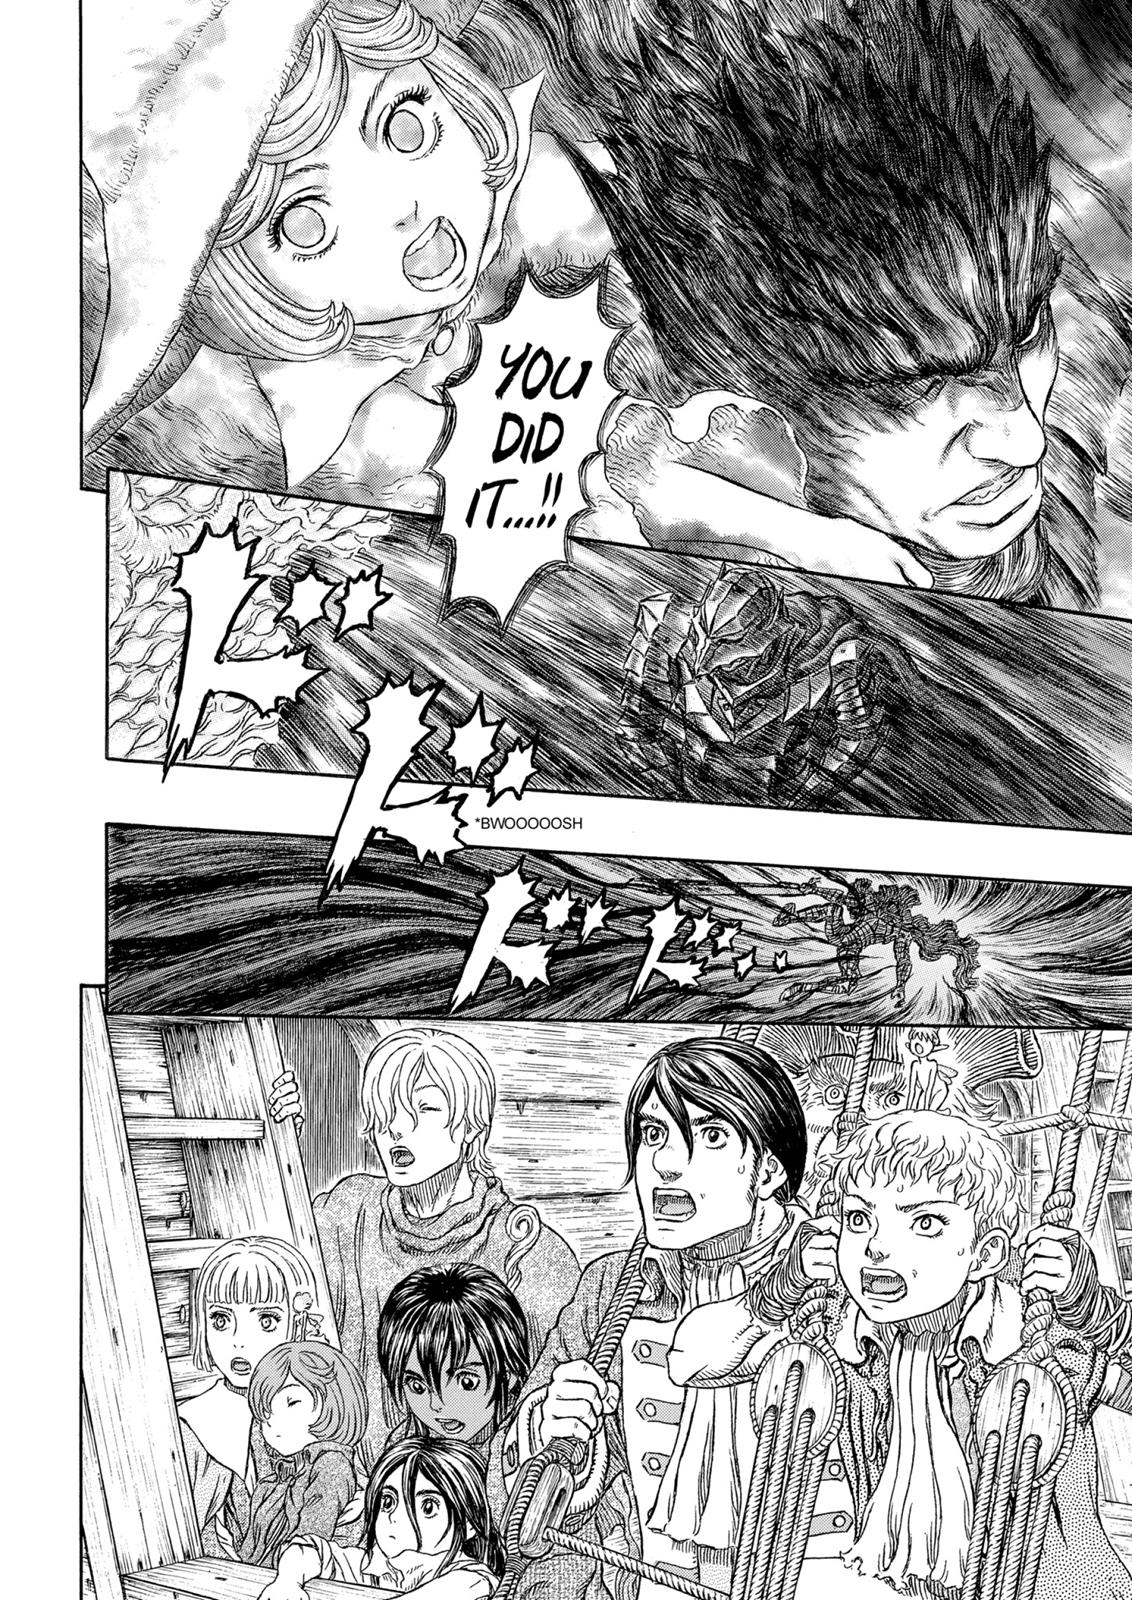 Berserk Manga Chapter 326 image 14